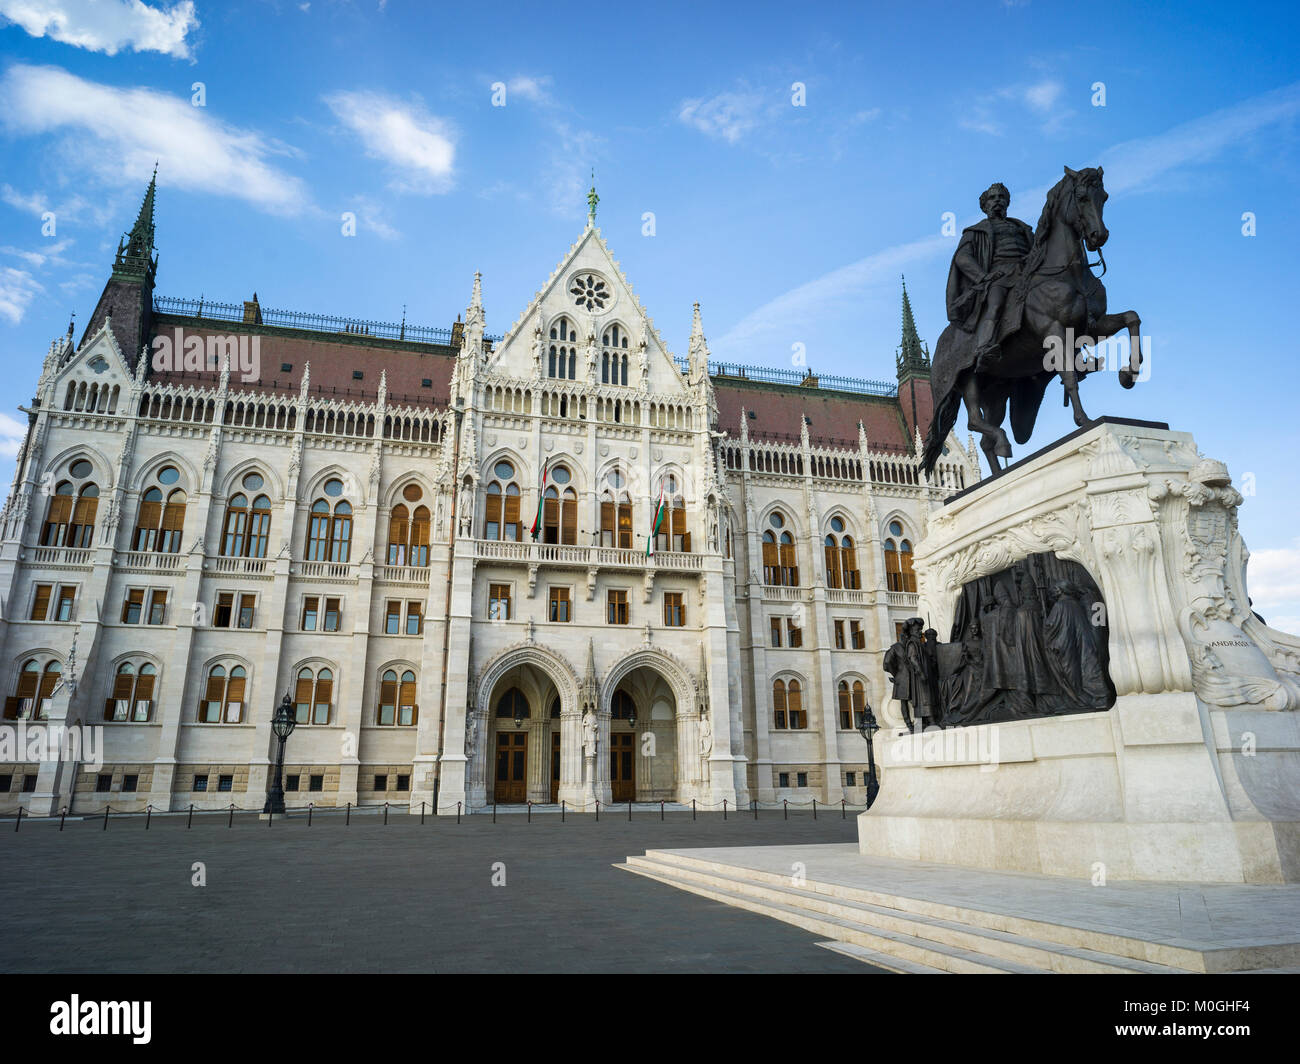 Monument de Gyula Andrássy, le premier ministère entre 1867 et 1871, bâtiment du parlement hongrois, Budapest, Budapest, Hongrie Banque D'Images